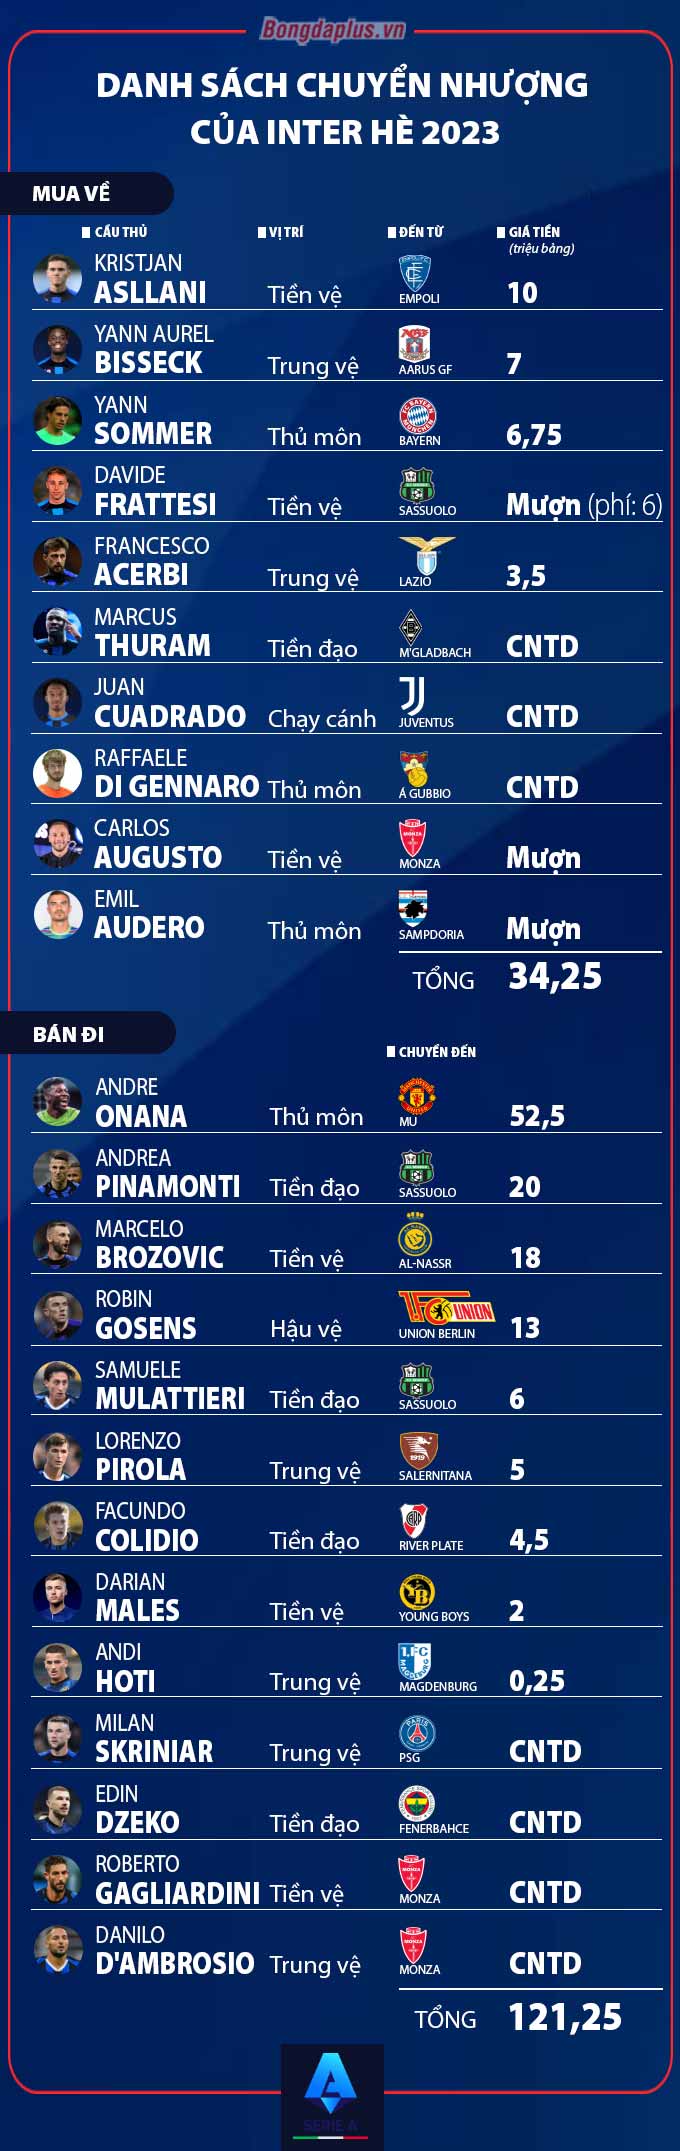 Danh sách chuyển nhượng Inter Hè 2023